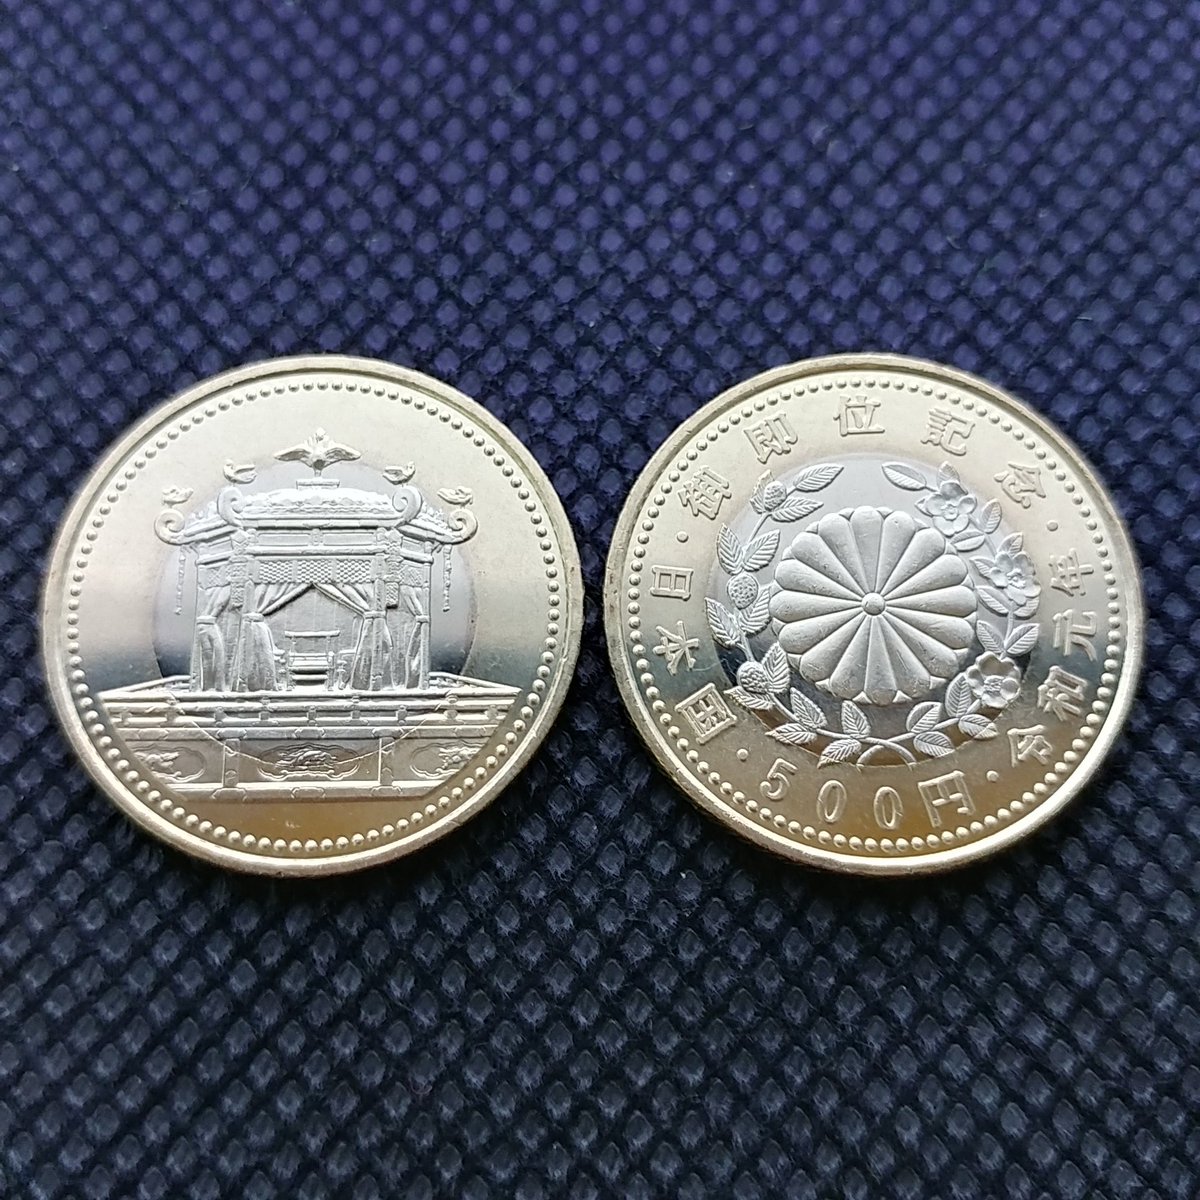 【令和元年】天皇陛下即位記念500円玉が全国の銀行で両替できるのでオススメ